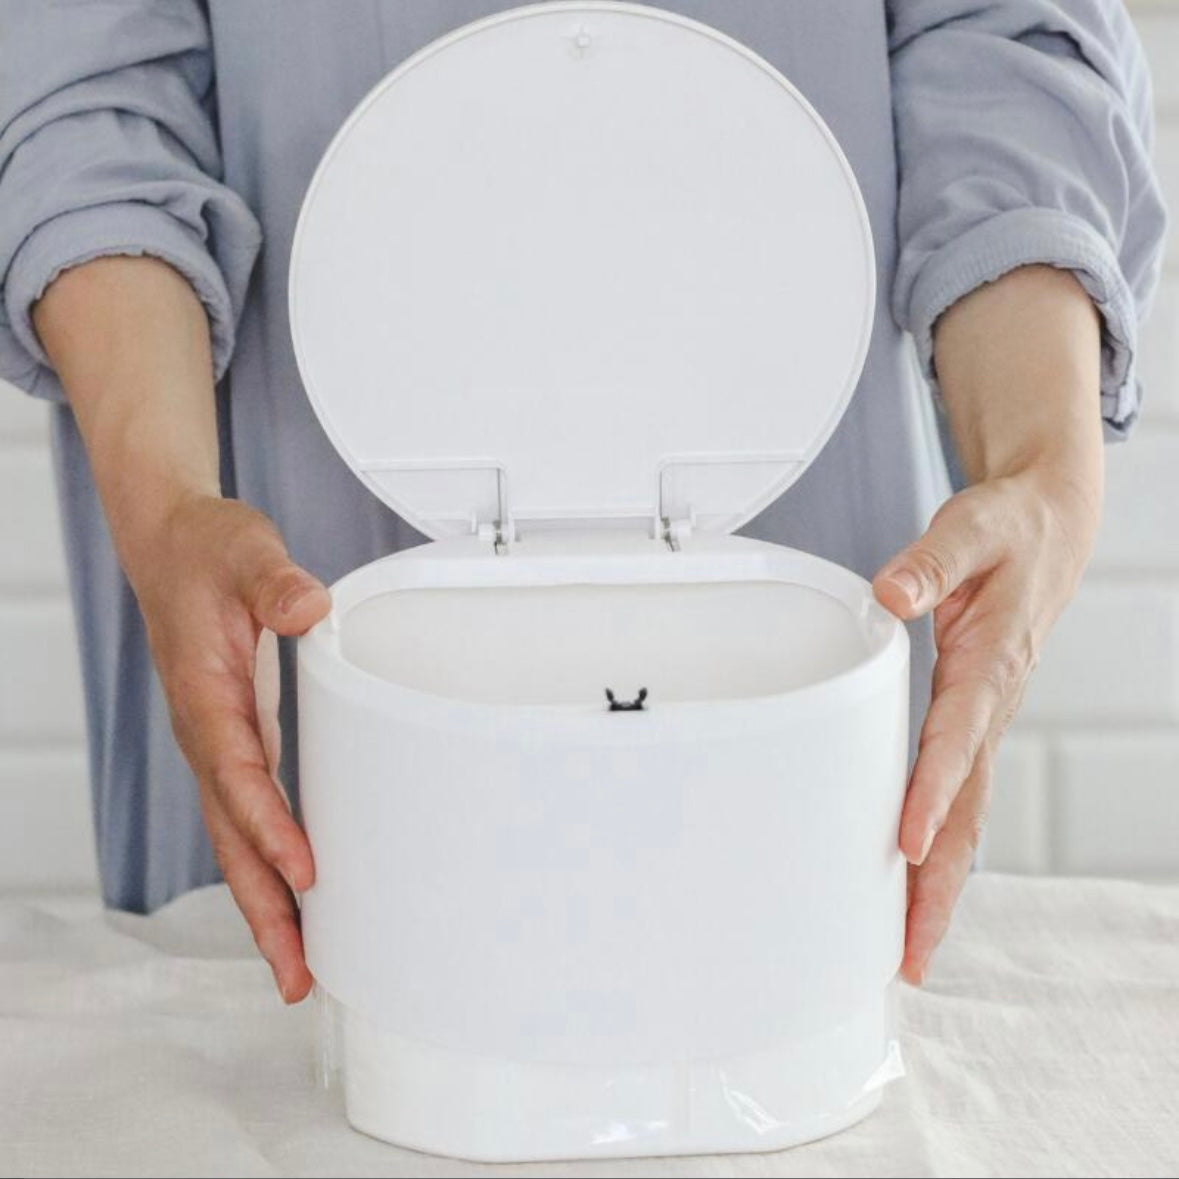 新品 ideaco TUBELOR flat20 イデアコ チューブラー ホワイト サンドホワイト 卓上ゴミ箱 生ゴミ 丸型 衛生的 水拭き 丸洗い